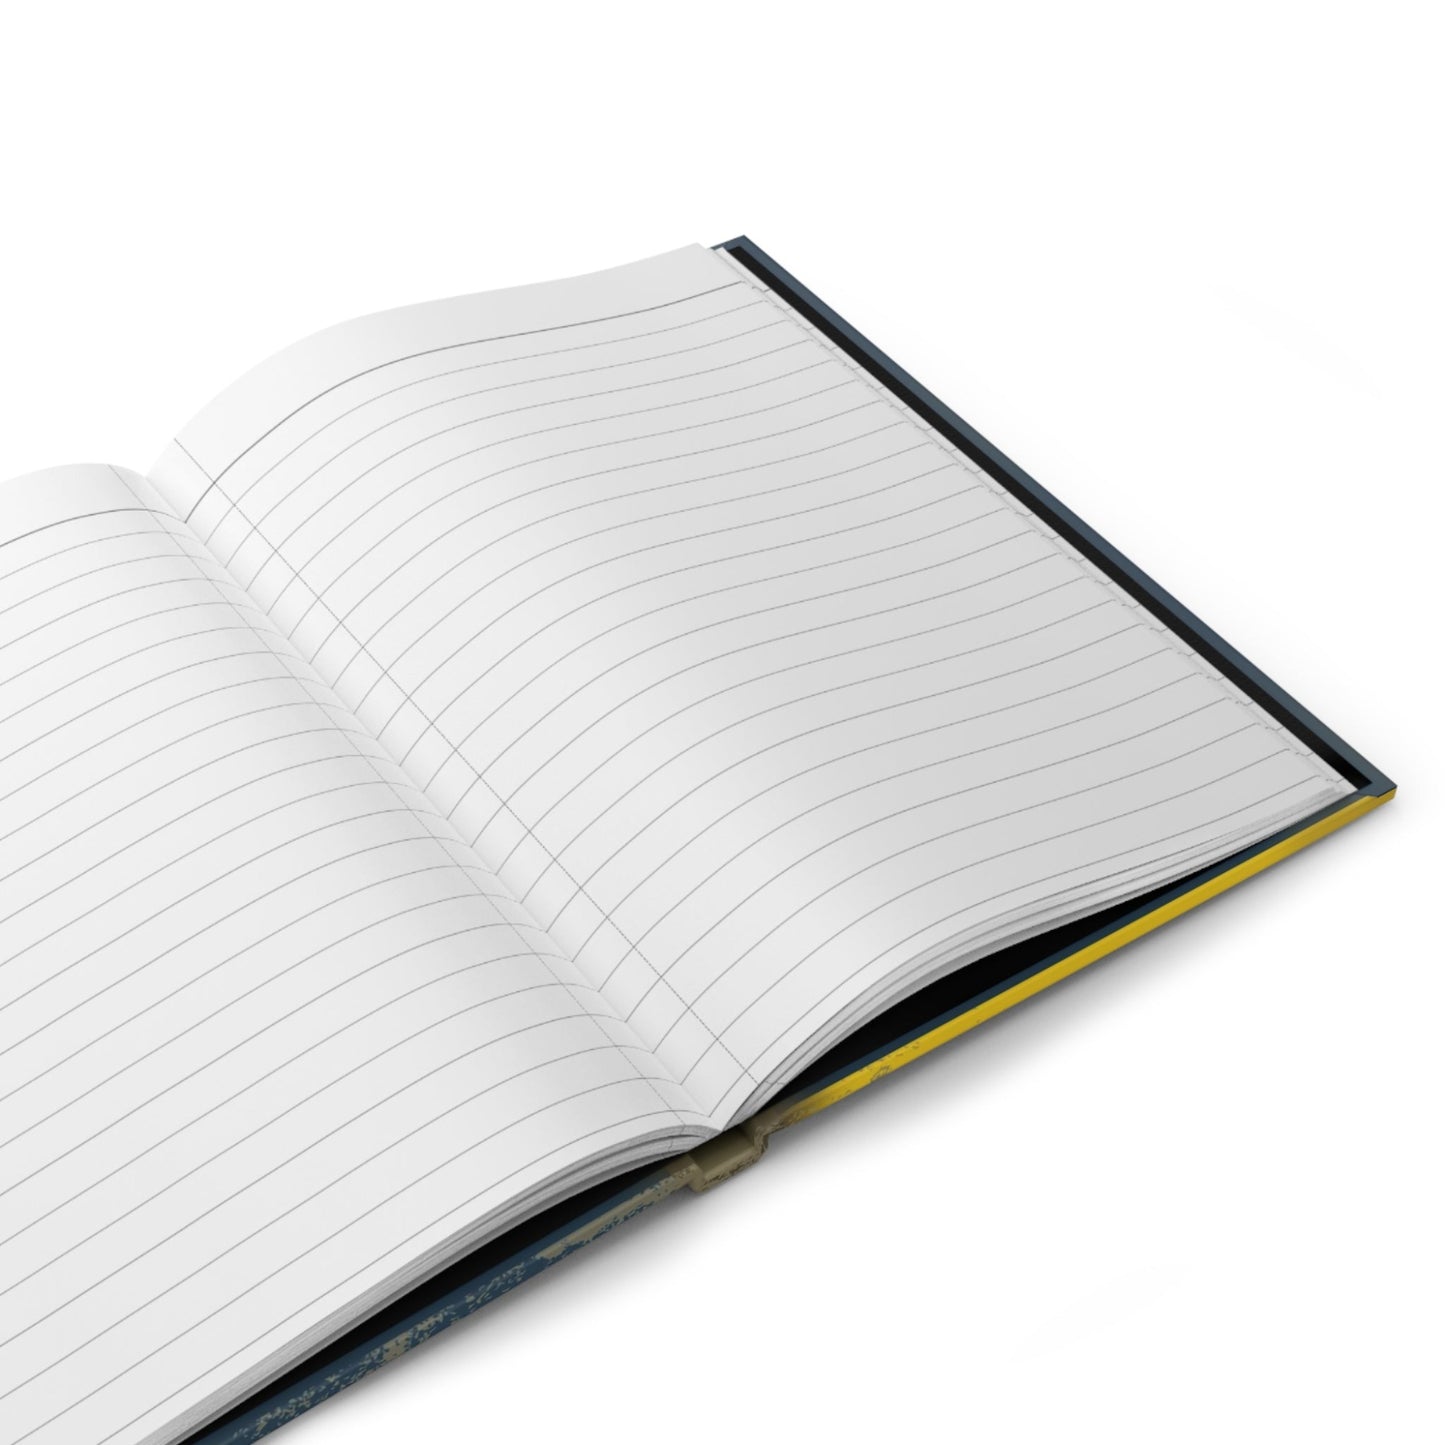 Rogue One Notebook // Hardcover Journal Matte